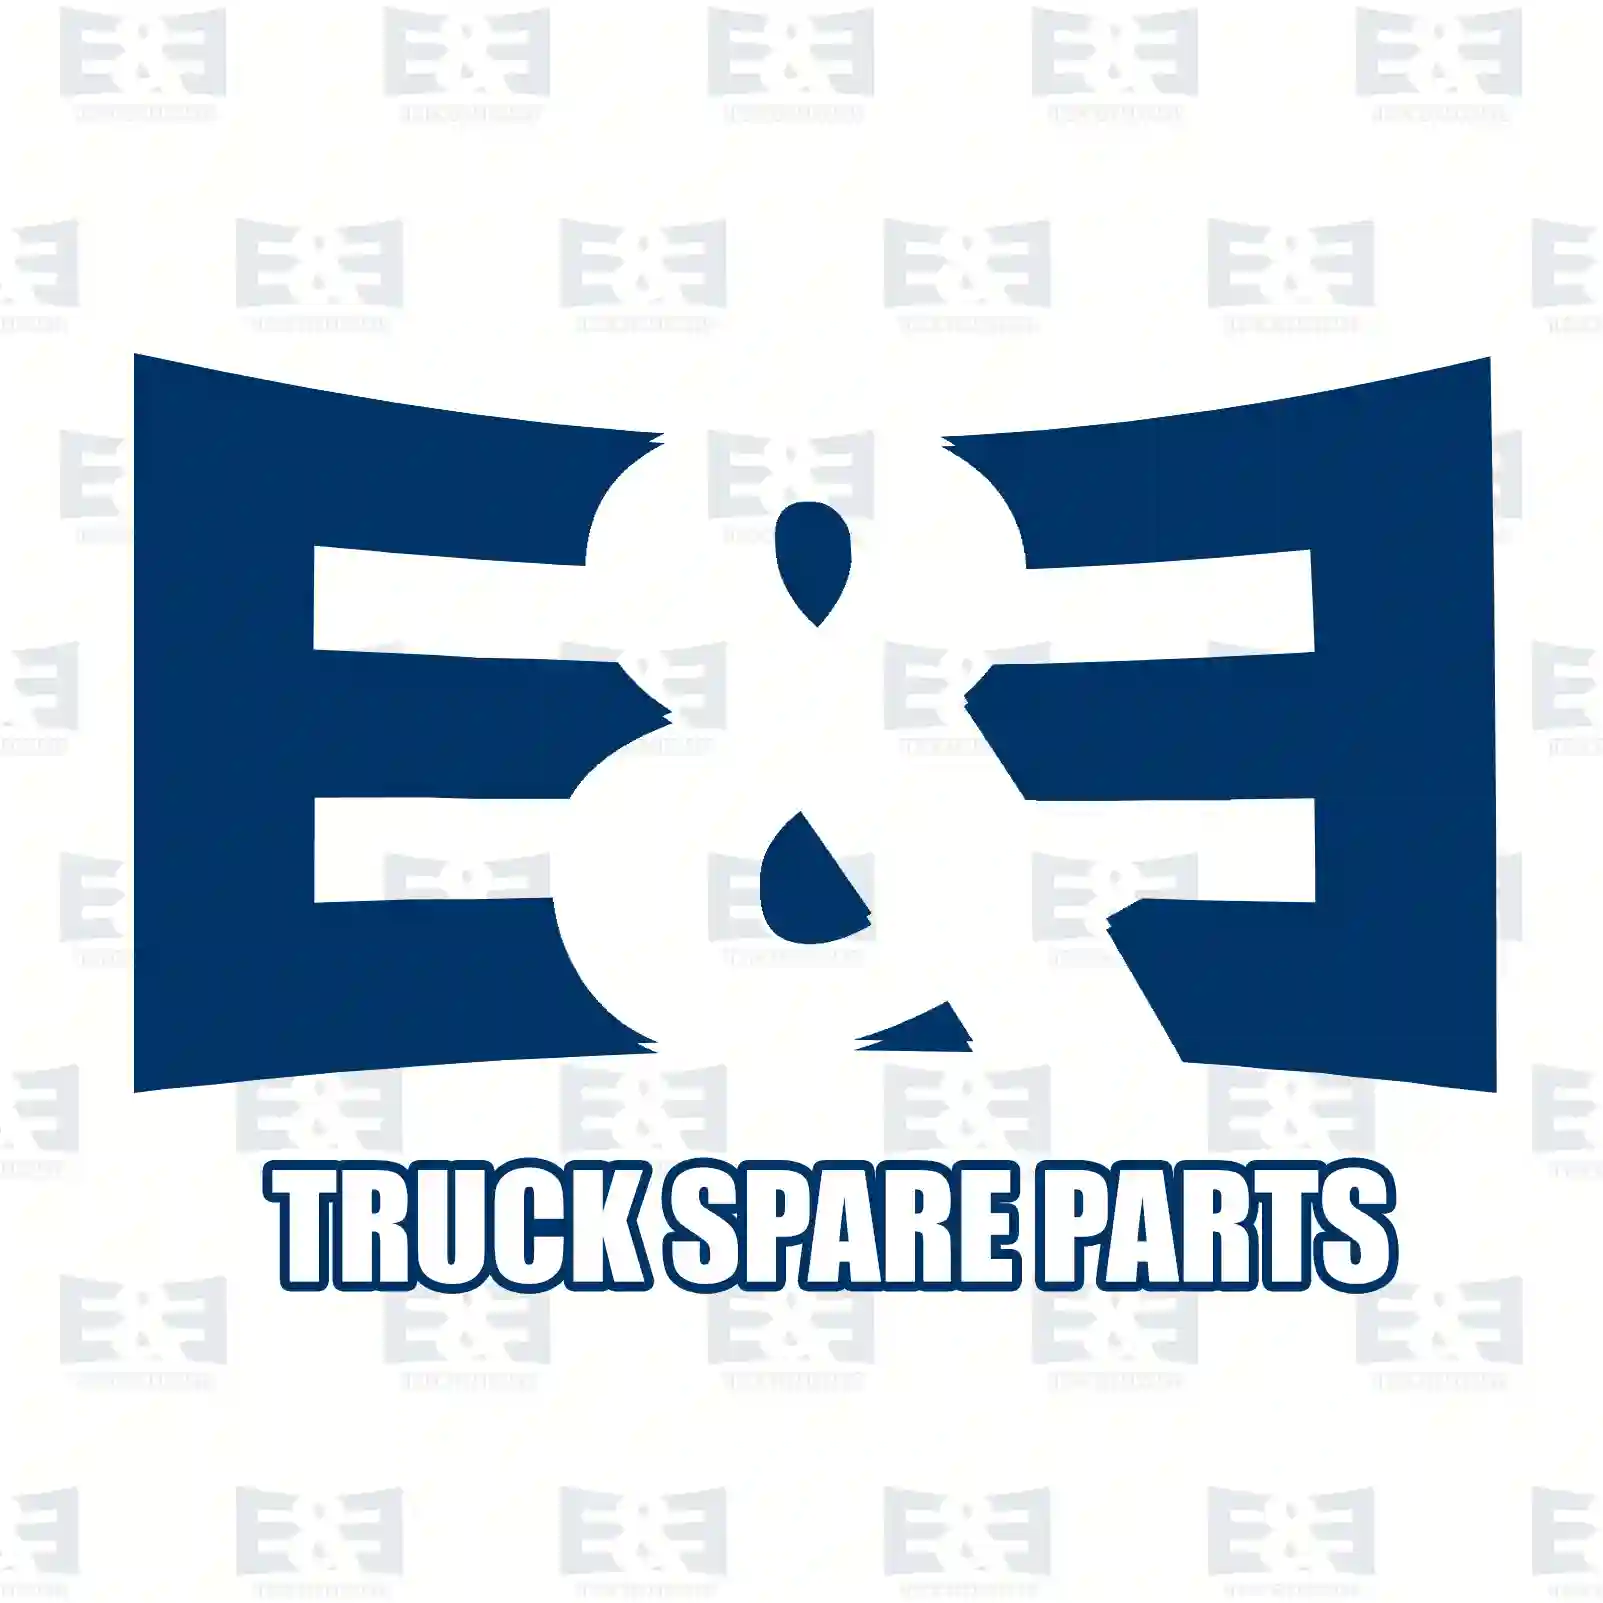 Wiper linkage, 2E2293161, 81264116101, 81264116113, 81264116120 ||  2E2293161 E&E Truck Spare Parts | Truck Spare Parts, Auotomotive Spare Parts Wiper linkage, 2E2293161, 81264116101, 81264116113, 81264116120 ||  2E2293161 E&E Truck Spare Parts | Truck Spare Parts, Auotomotive Spare Parts